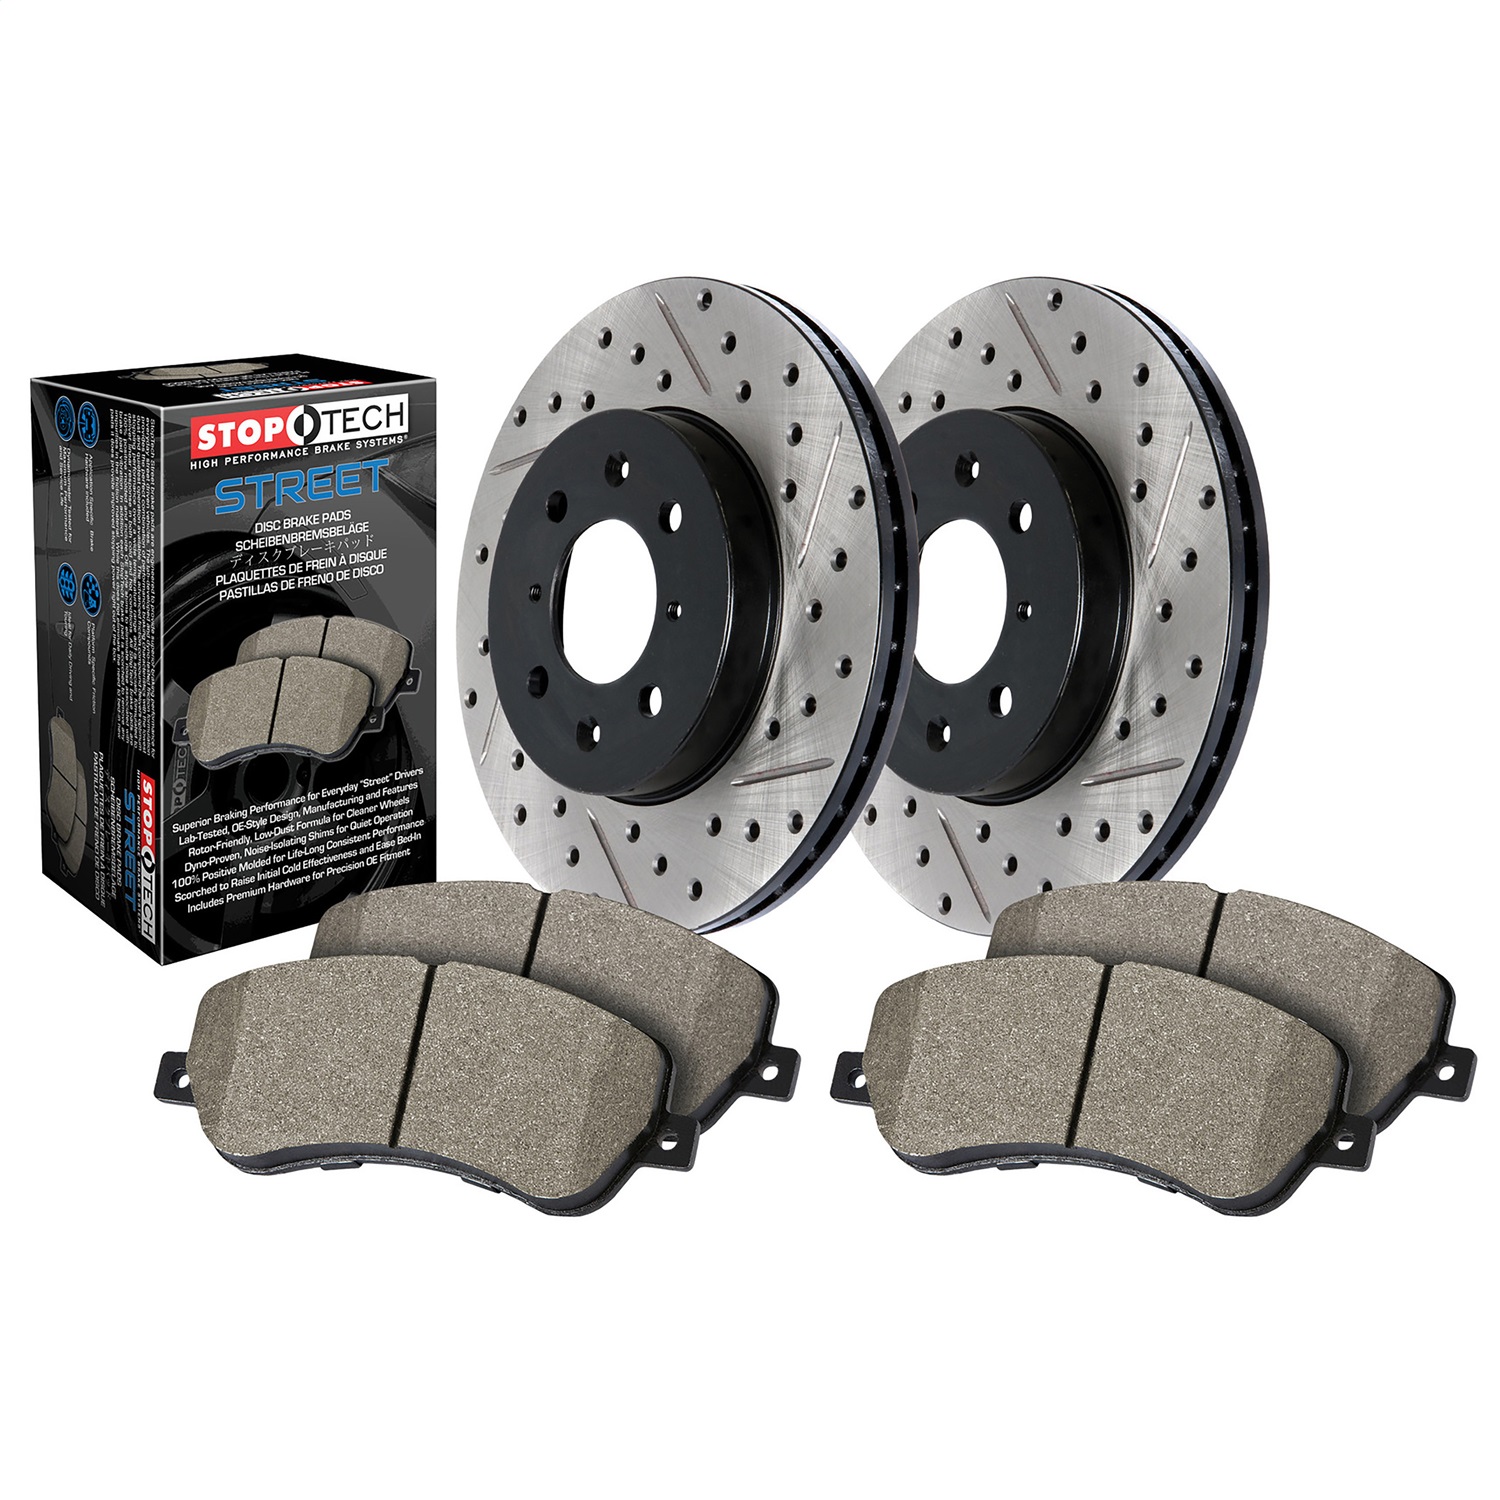 StopTech 938.42005 Disc Brake Upgrade Kit